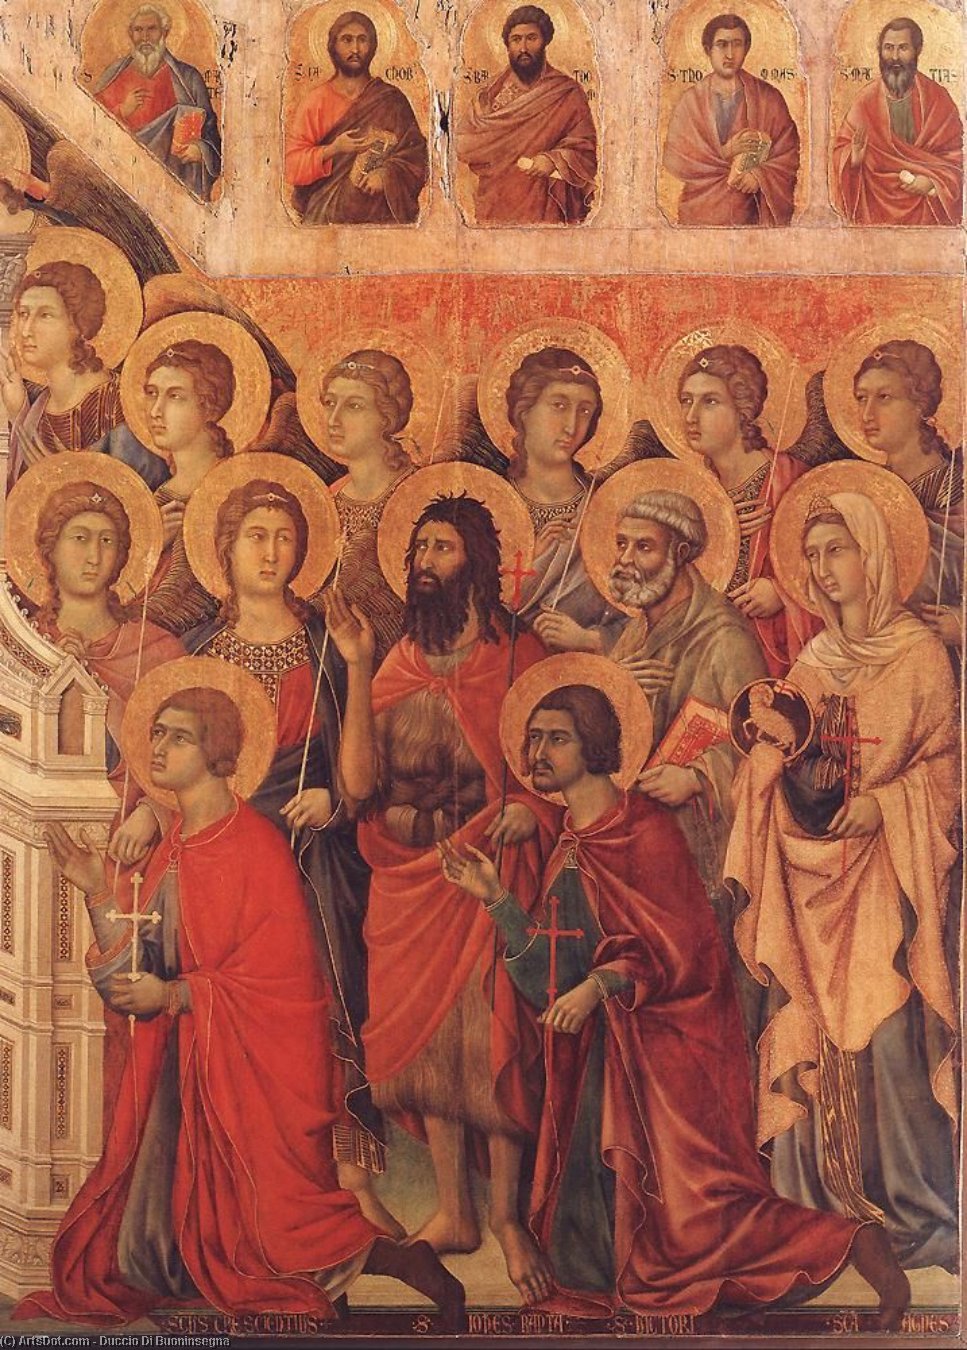 WikiOO.org - Encyclopedia of Fine Arts - Maleri, Artwork Duccio Di Buoninsegna - Maestà (detail)